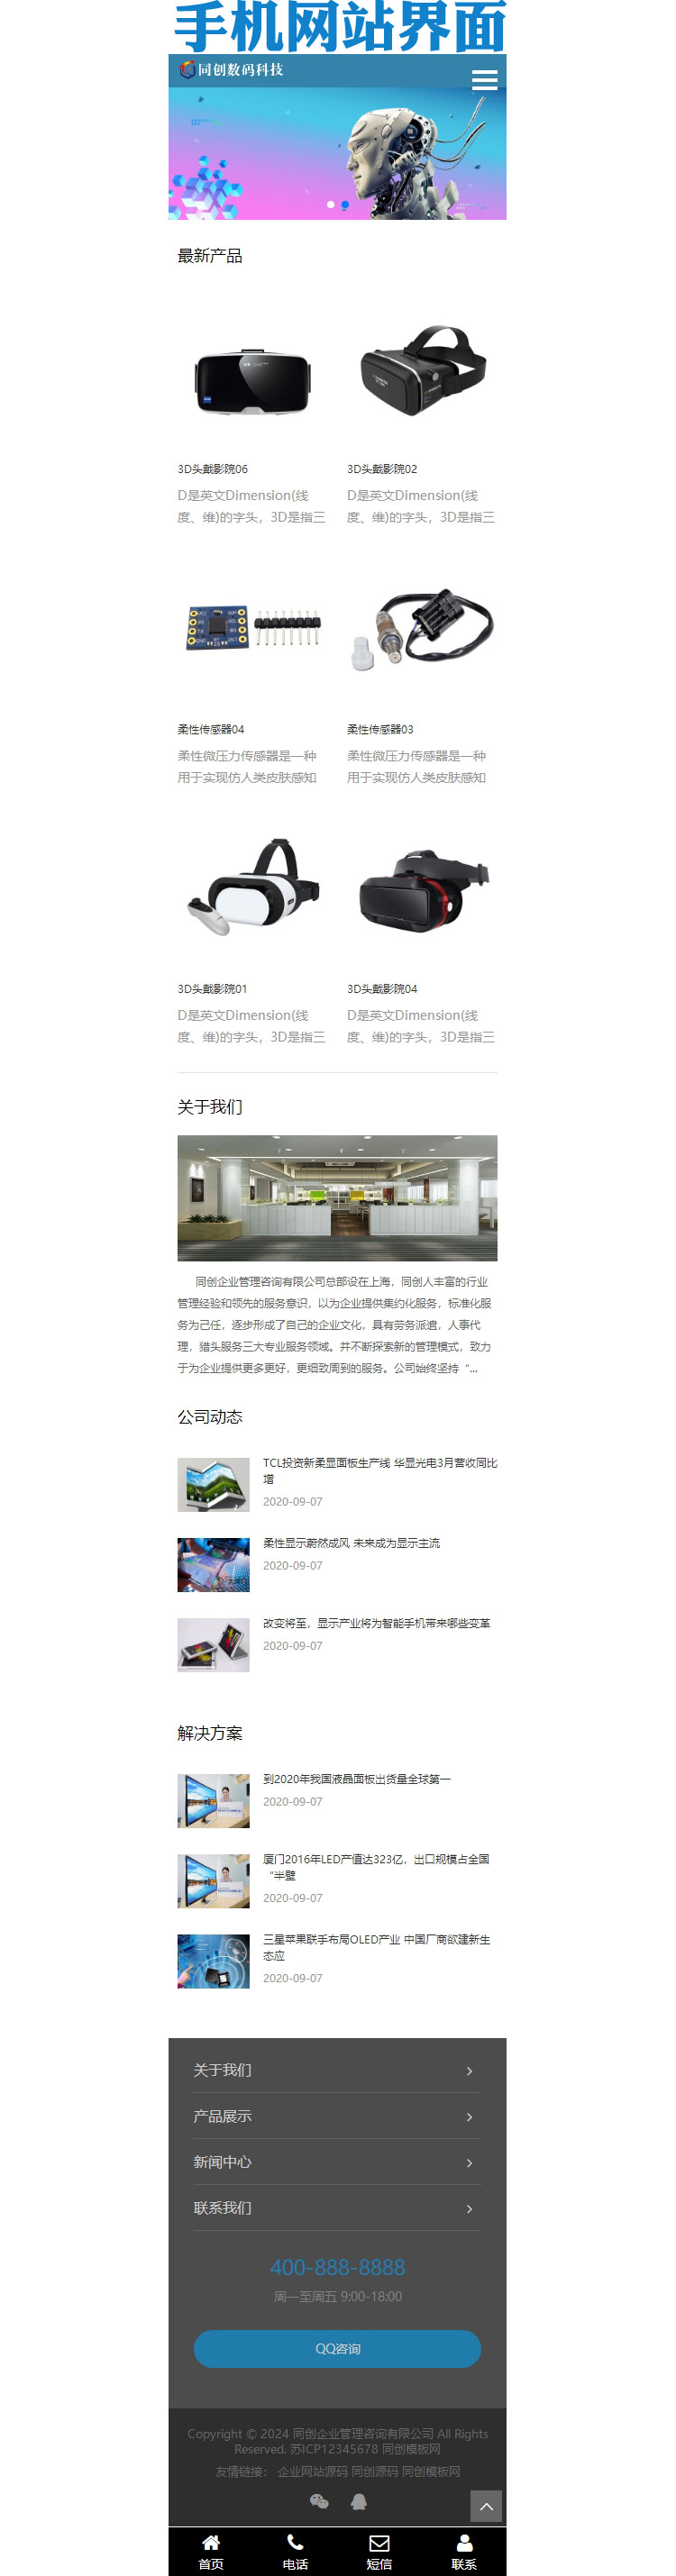 响应式科技产品传感器网站模板-ZP193-3